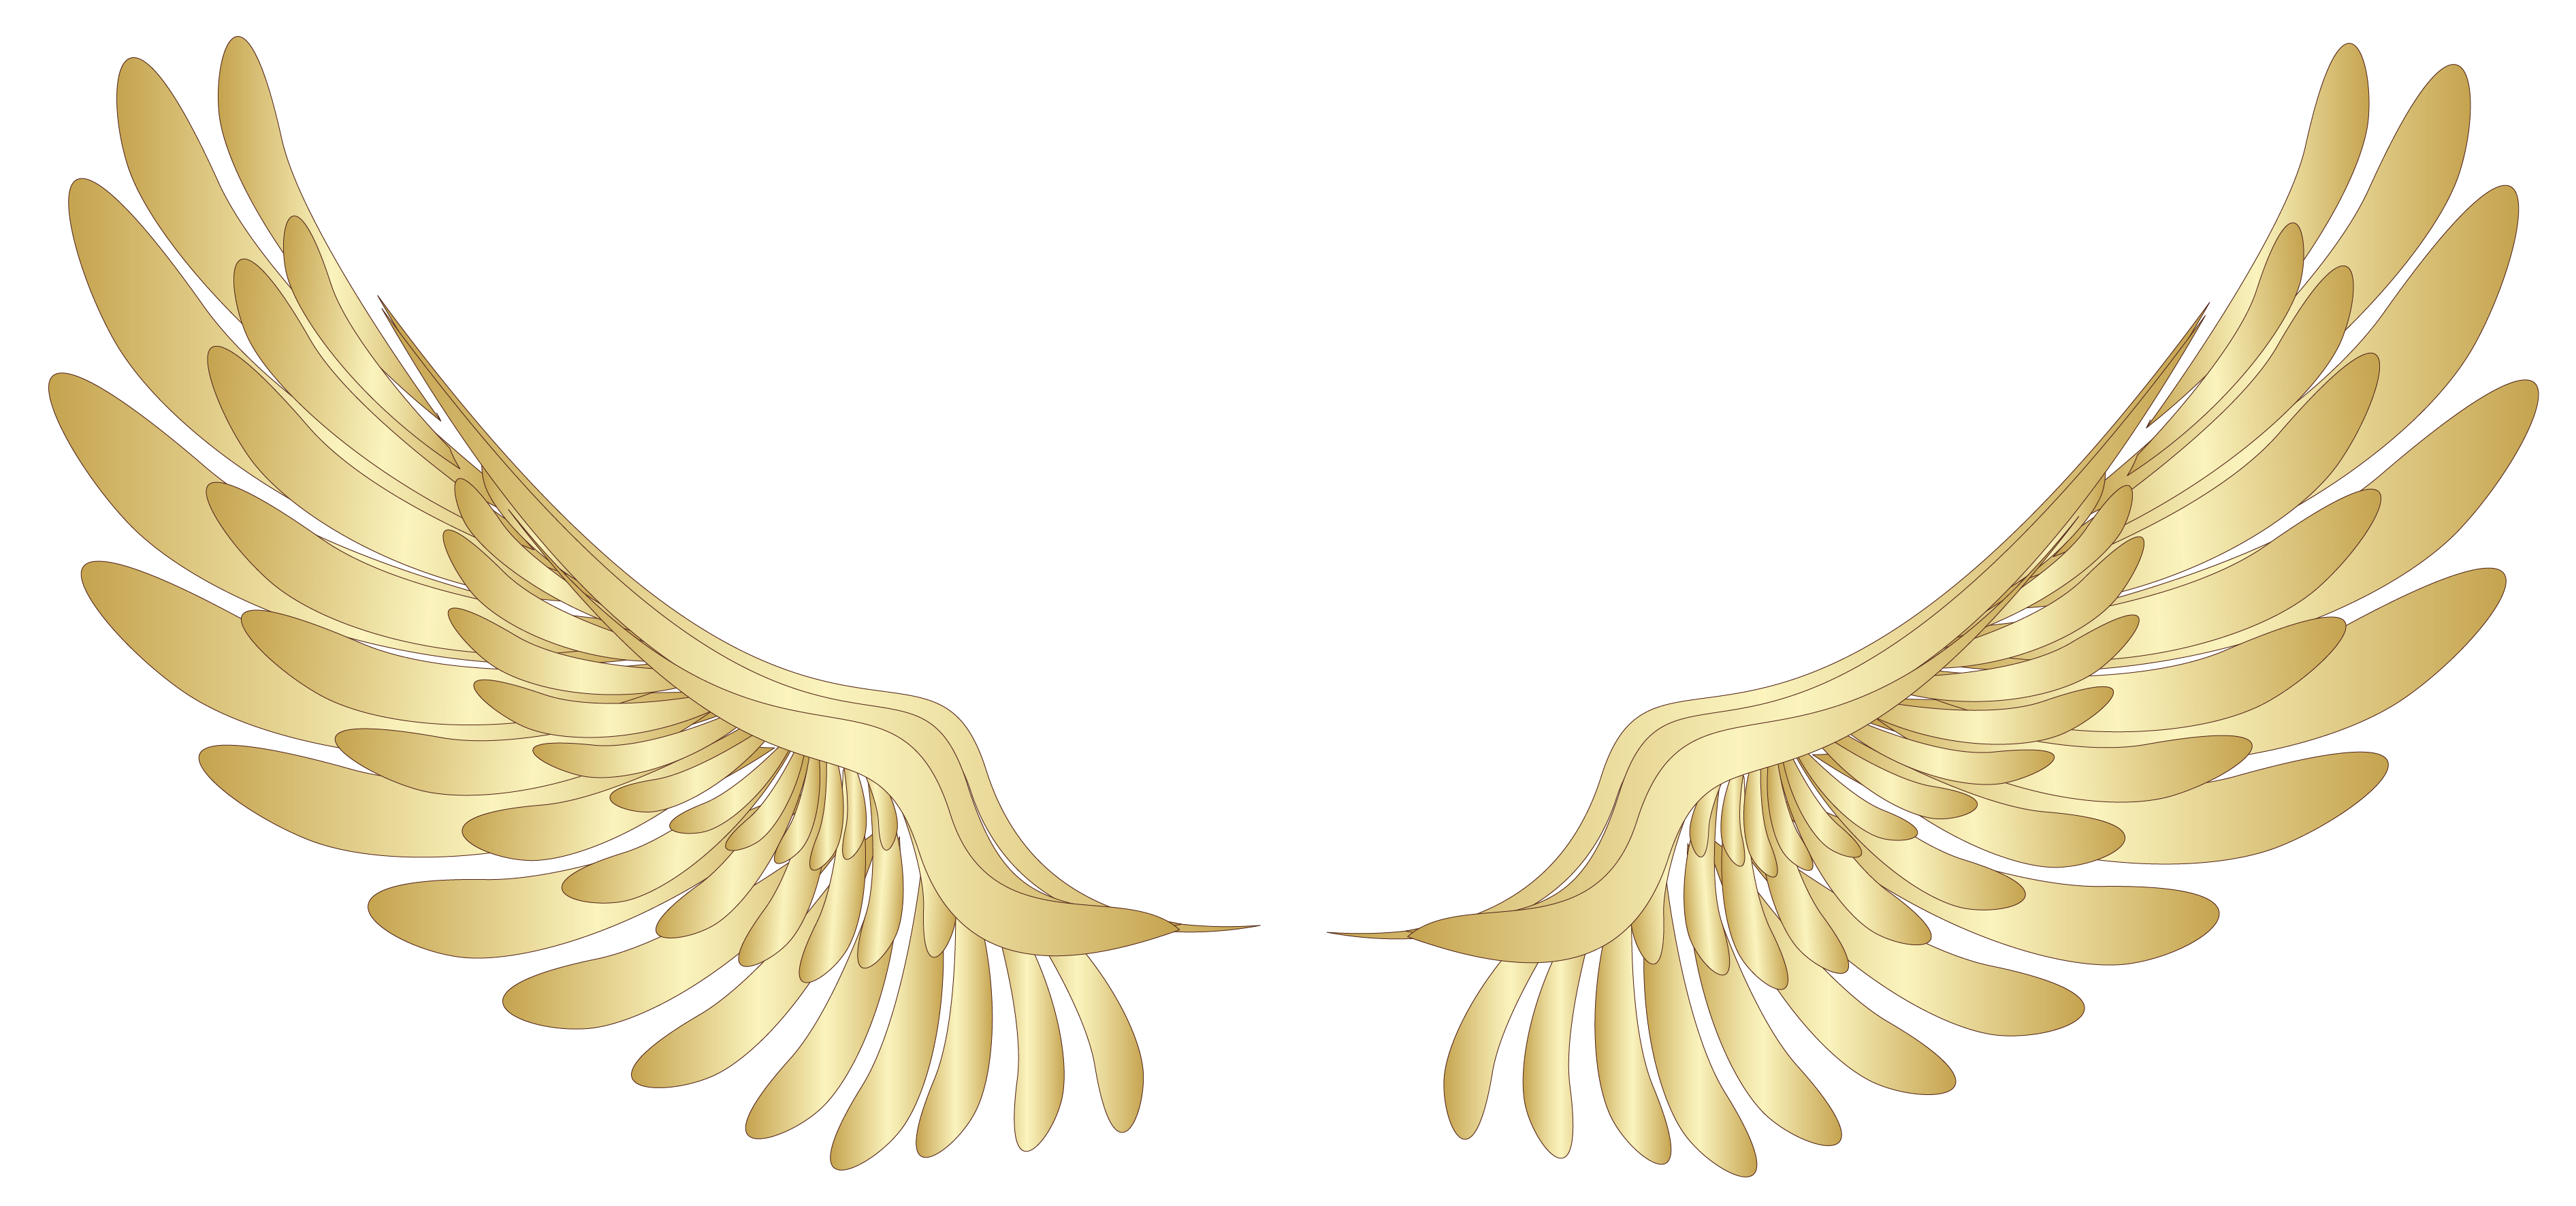 Immagine Trasparente delle ali di angelo